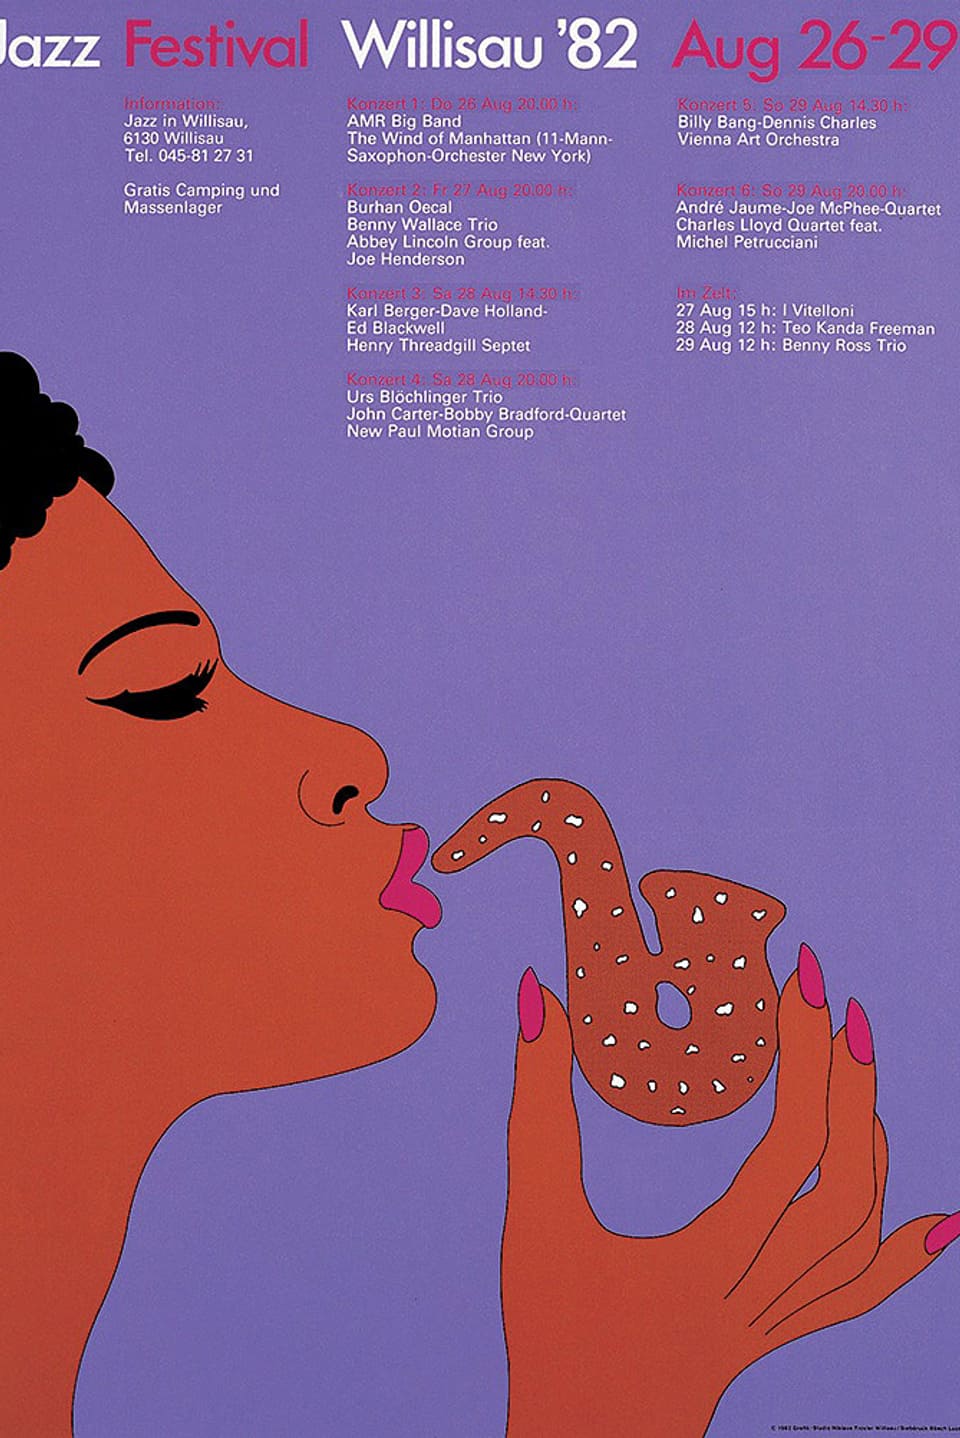 Auf dem Plakat von 1982 ist eine Frau zu sehen, die sich ein Gebäck in Form eines Saxophons vor den Mund hält.